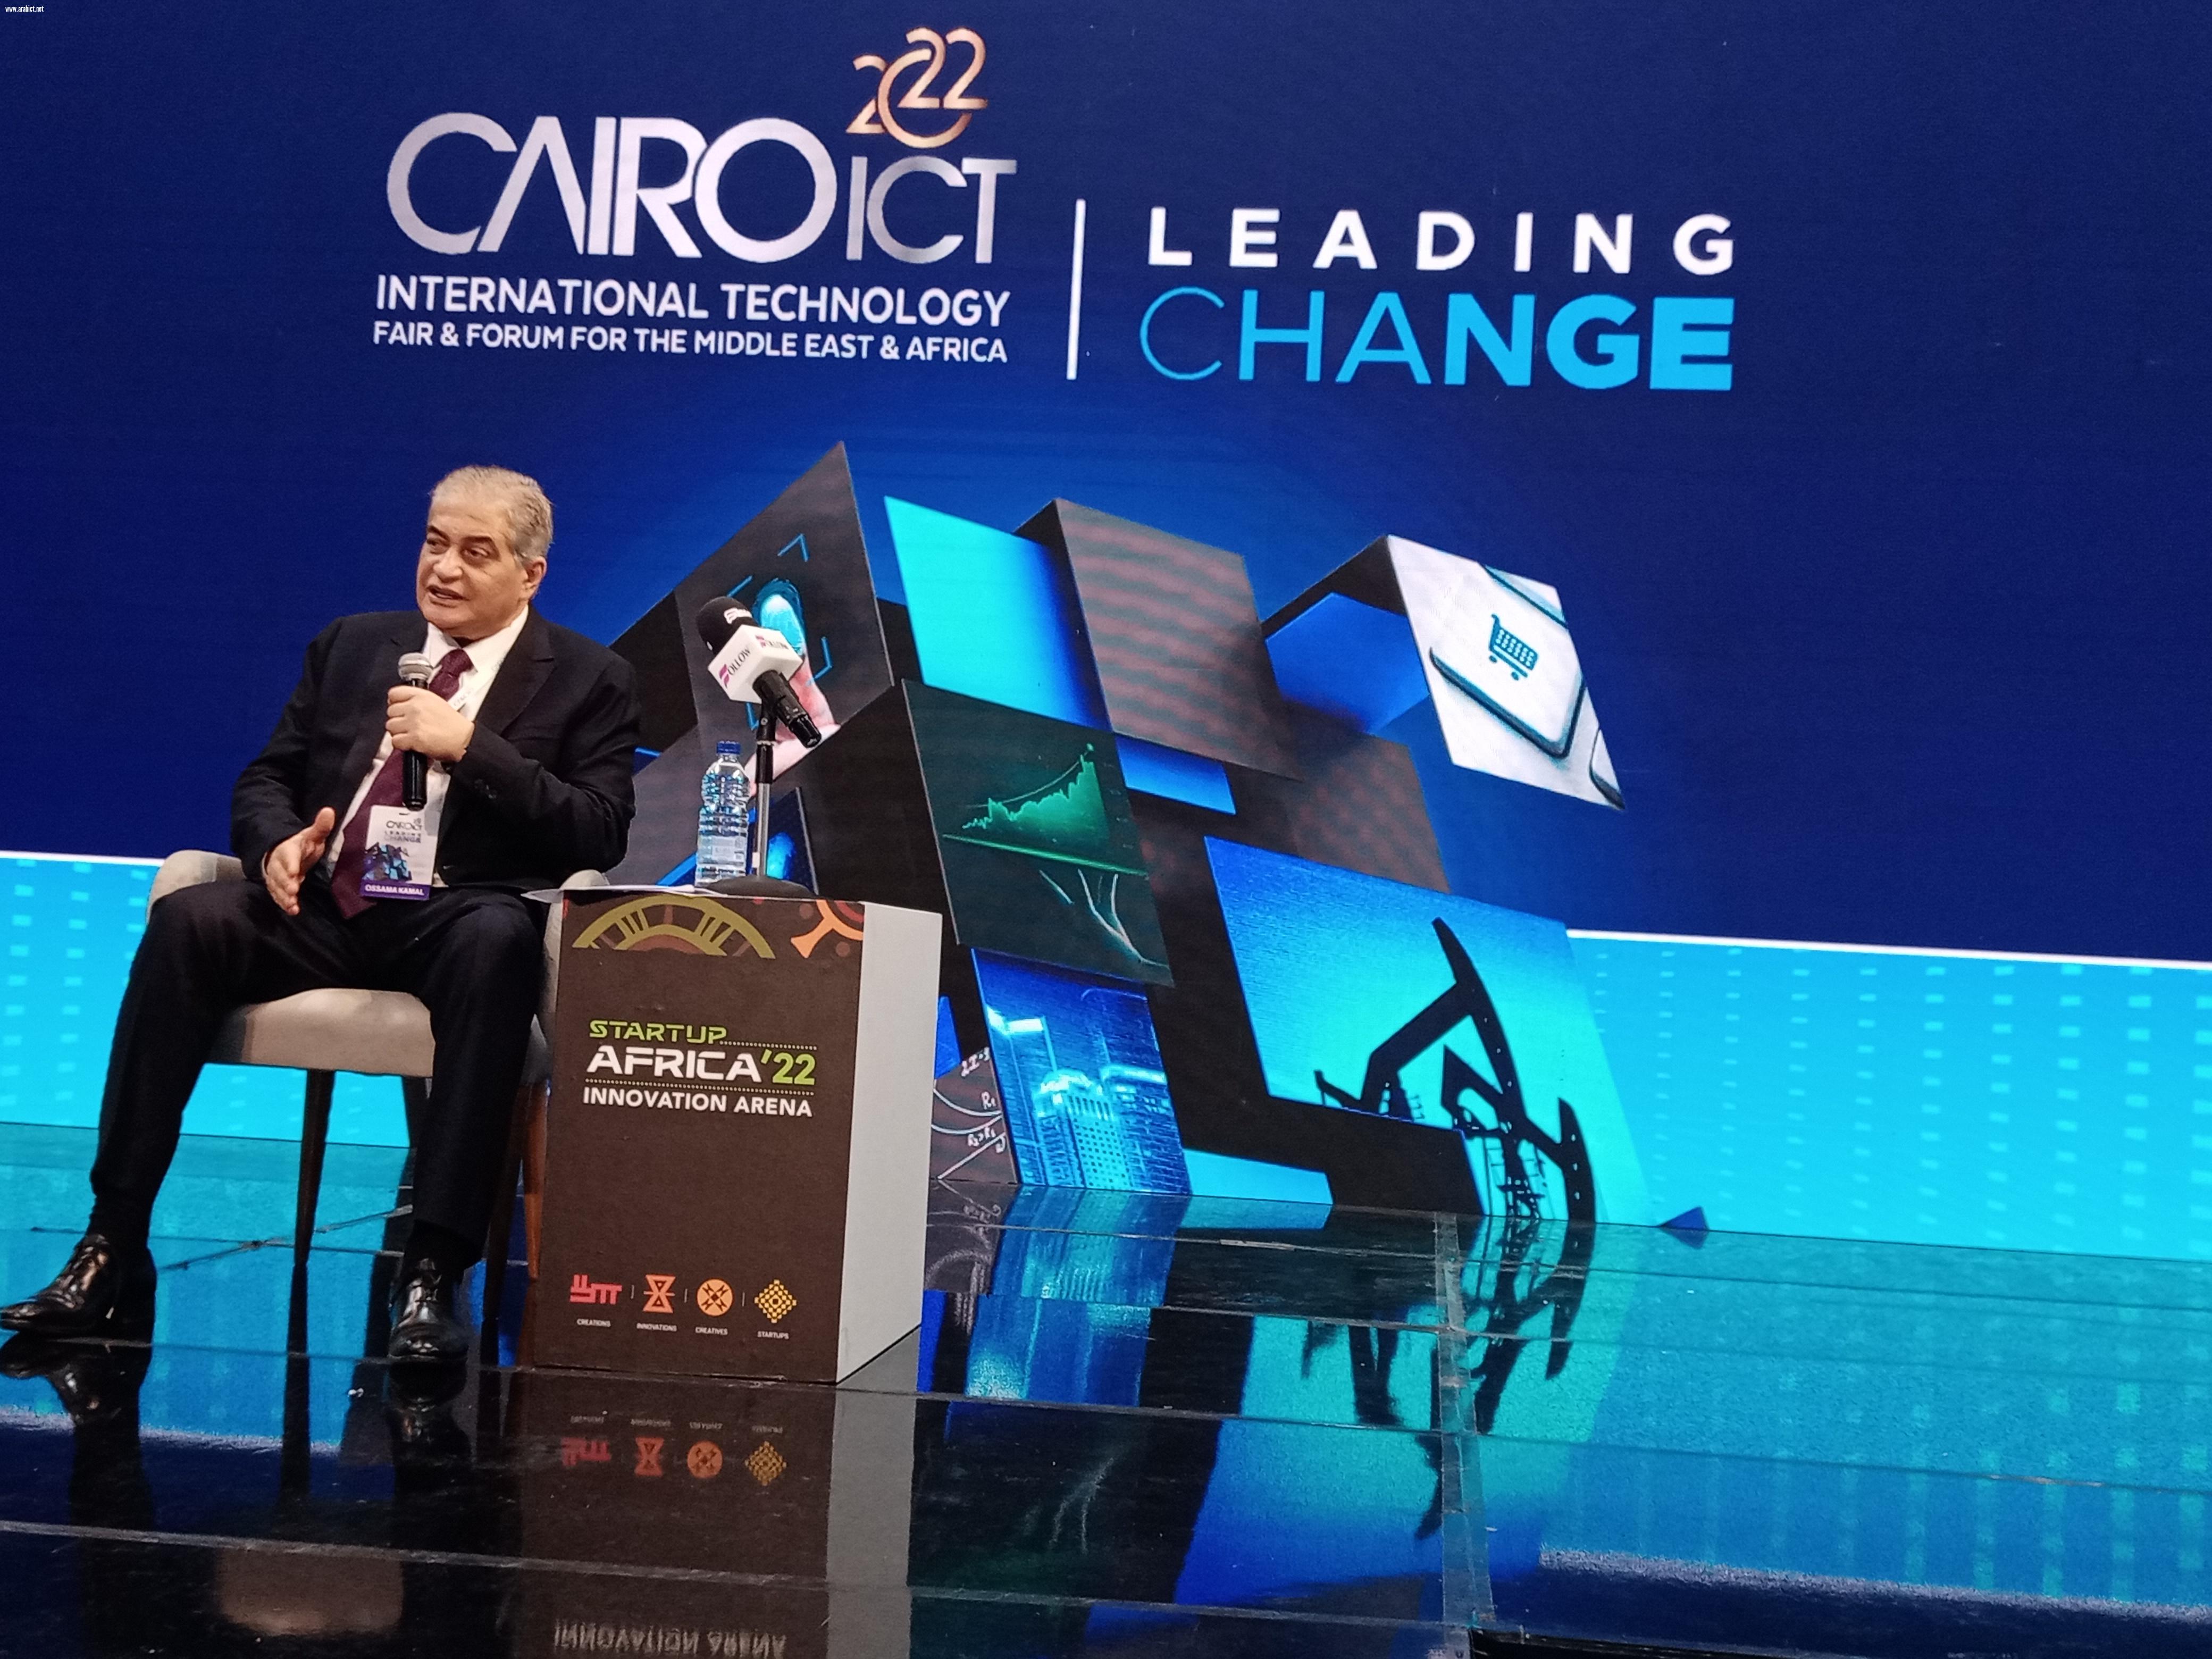 Cairo ICT يختتم فعالياته بزيادة 31% للعارضين وحضور 102 آلف زائر و6 وزراء وبتمثيل  رفيع المستوى من الإمارات وروسيا والسعودية والصين